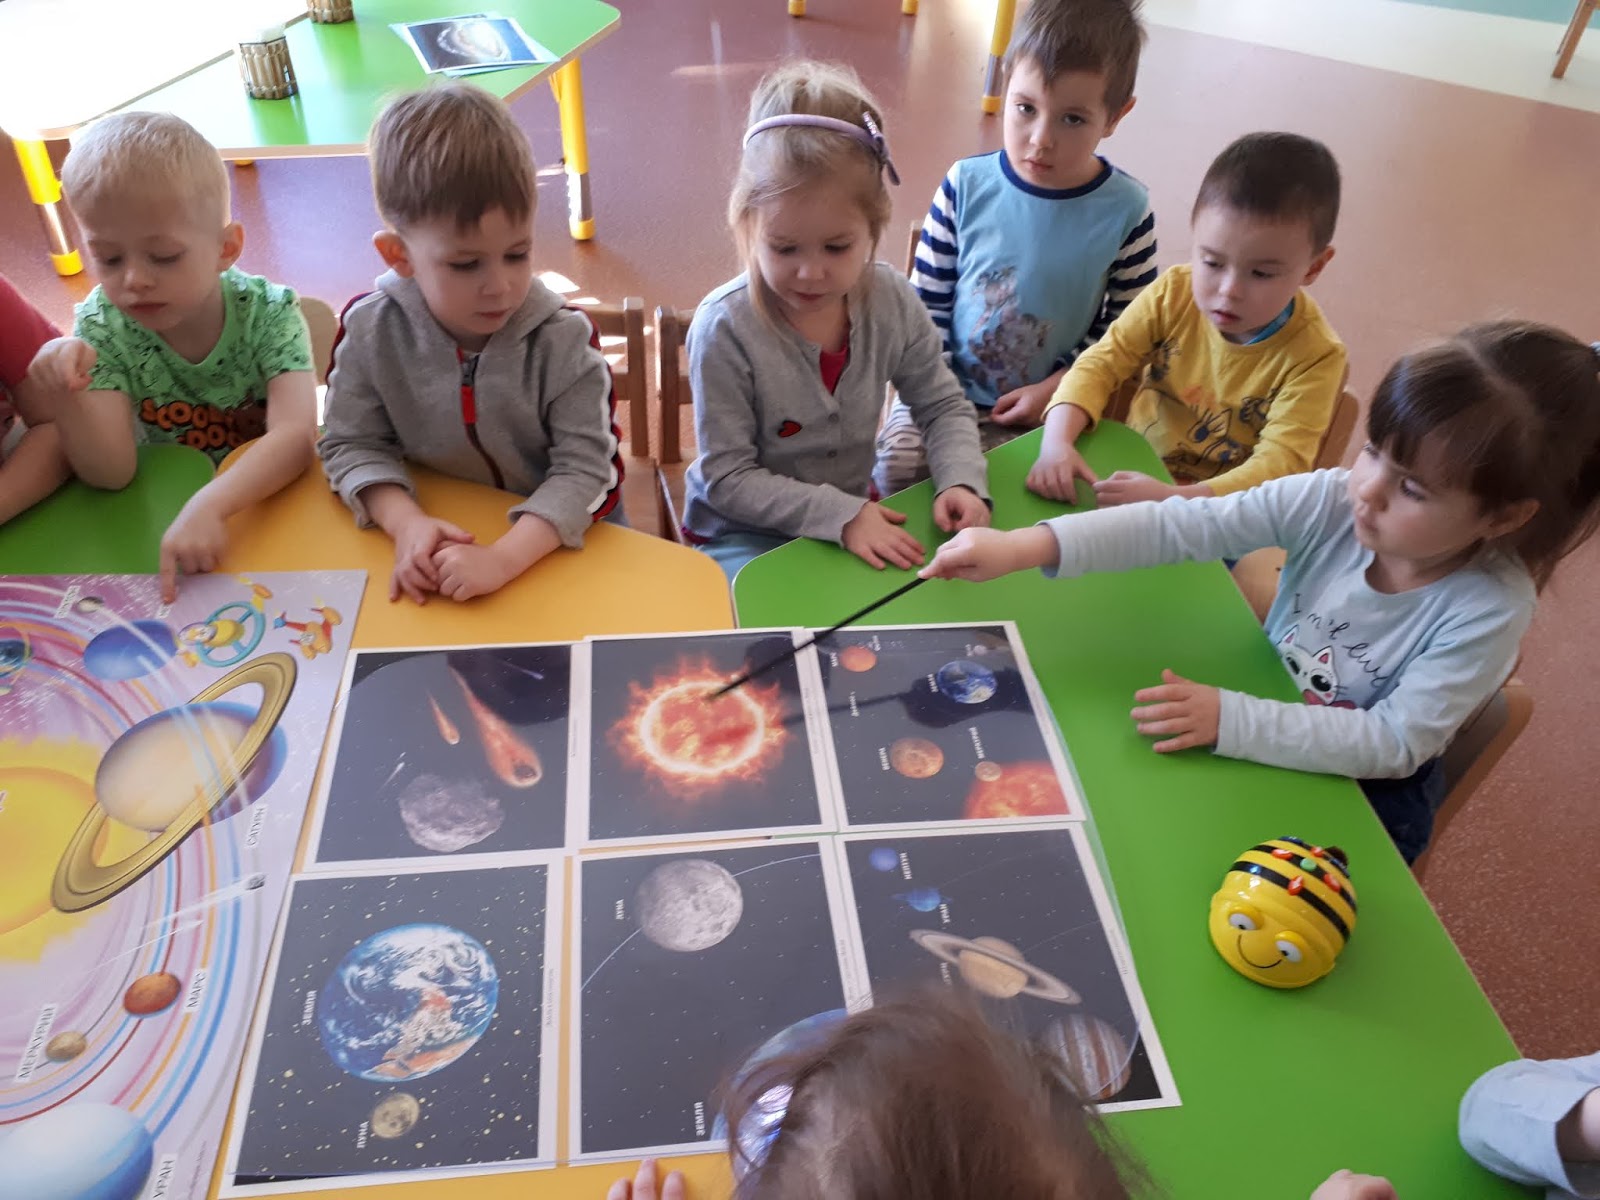 Развлечение космос средняя группа. Космическое занятие в садике. Занятия про космос в детском саду. Дети изучают планеты в детском саду. Дети изучают космос.